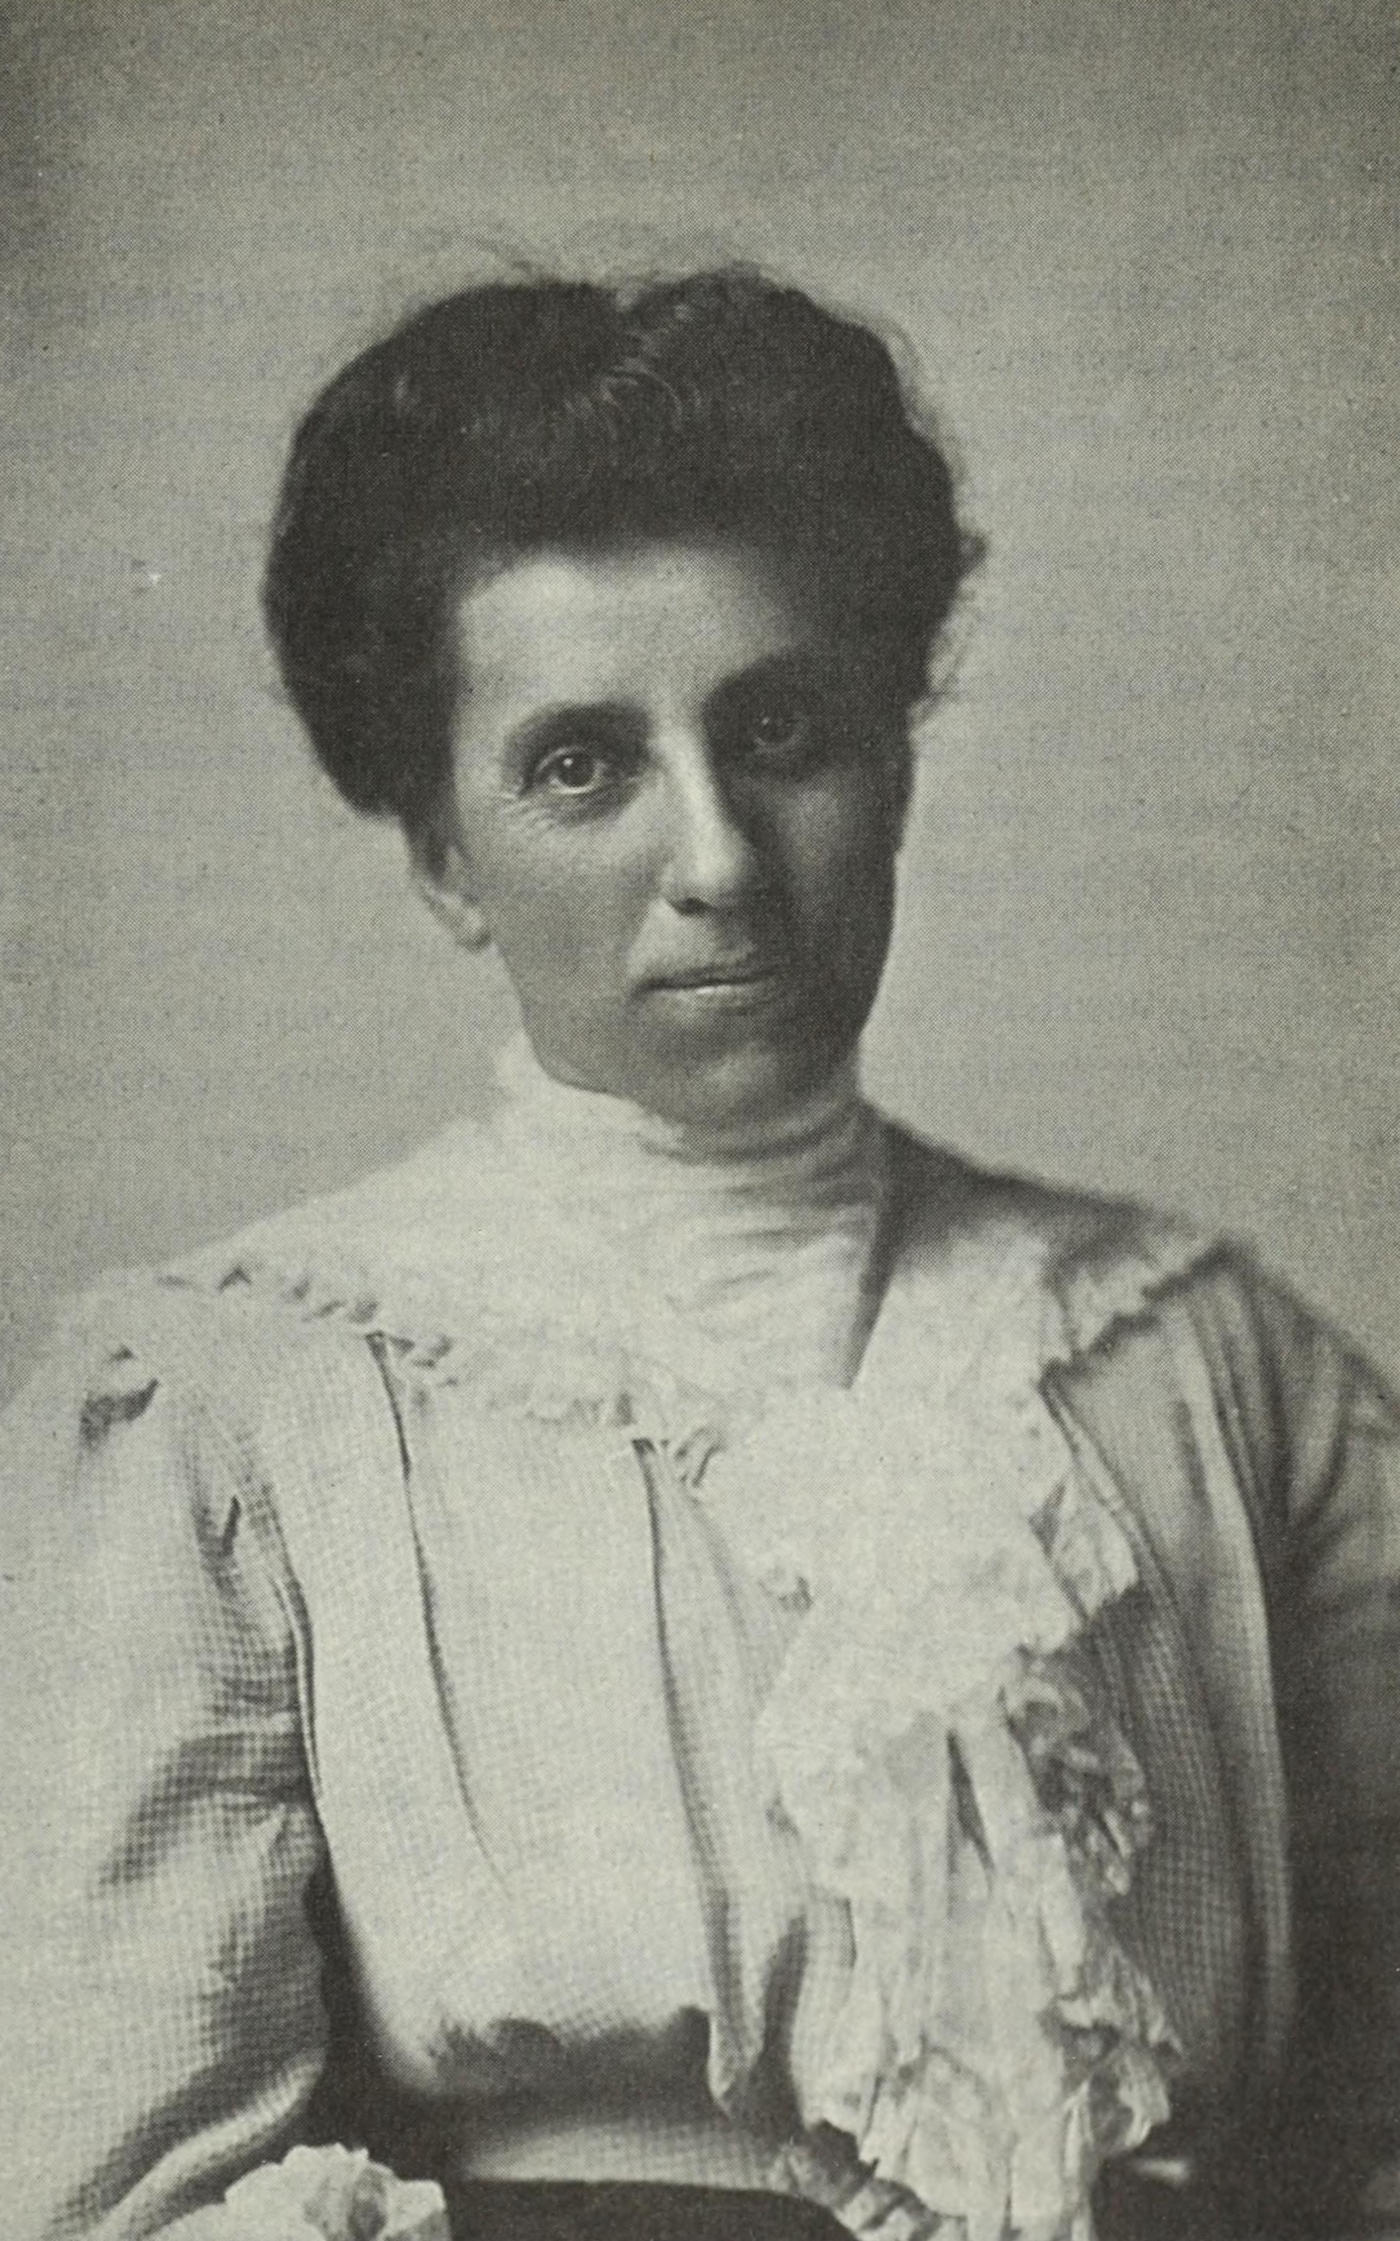 A portrait photograph of Julia C. Lathrop.